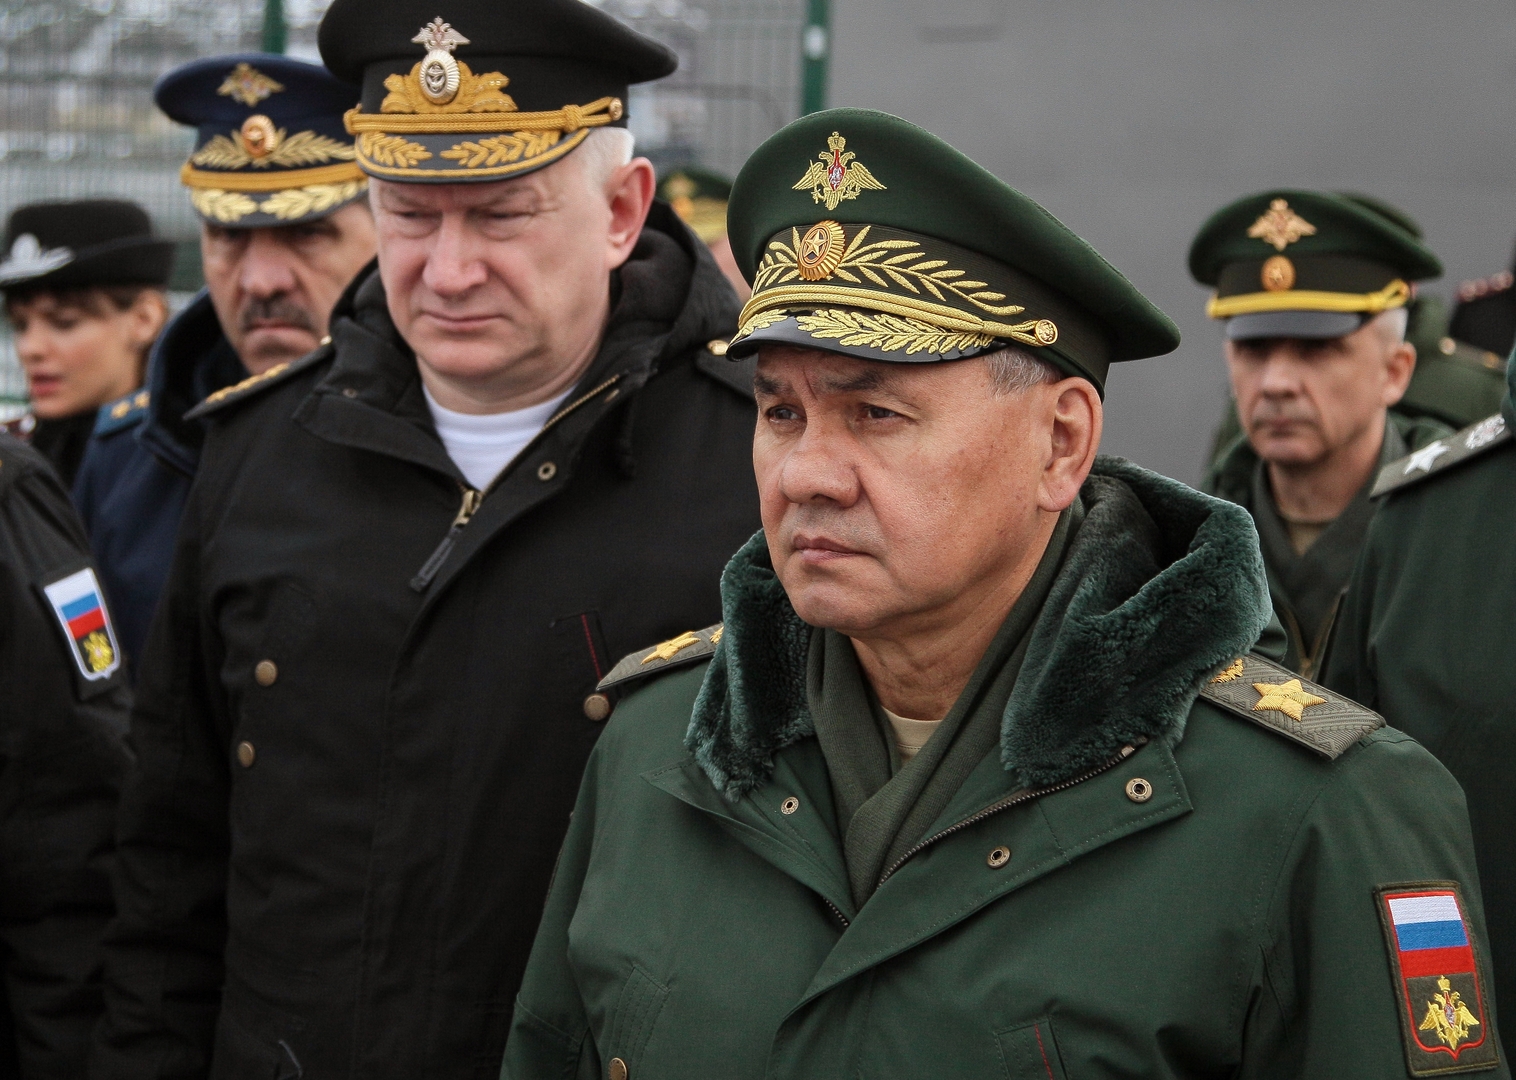 شويغو يأمر الجيش الروسي بالاستعداد للرد على أي تطورات سلبية حول مناورات الناتو القادمة في أوروبا